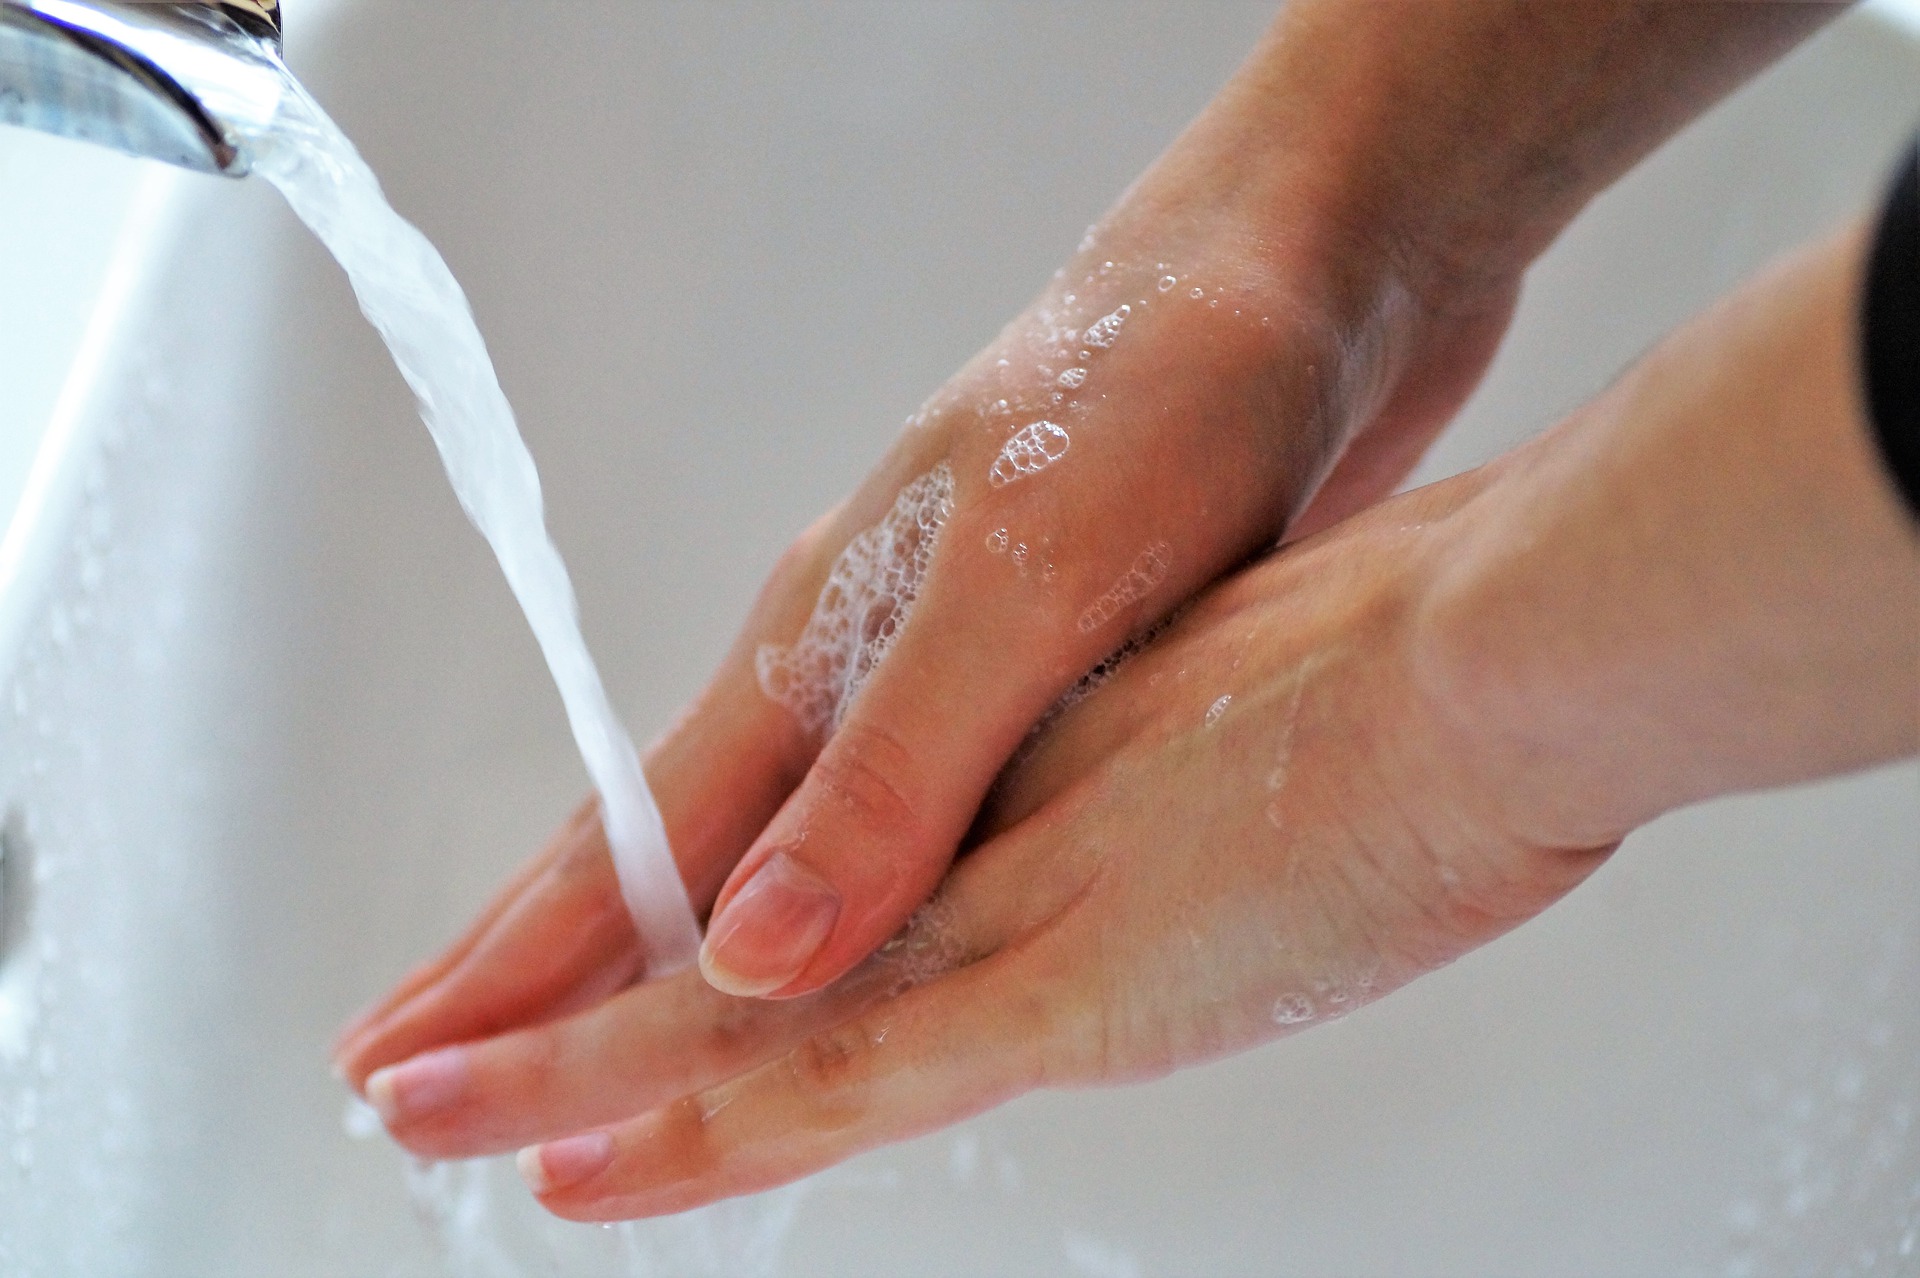 Zdrowy rozsądek i mycie rąk